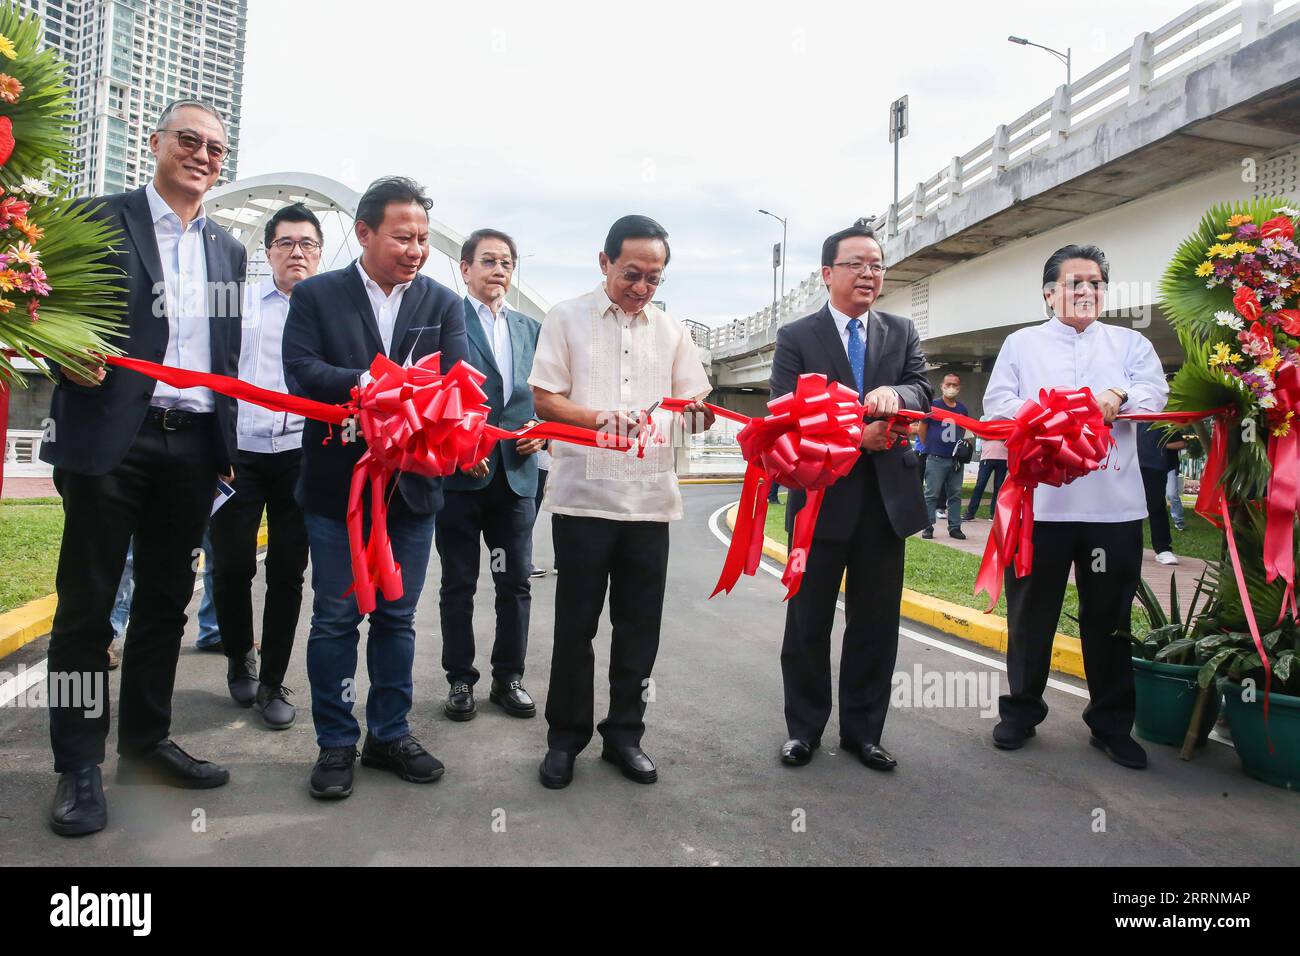 230120 -- MANILLE, le 20 janvier 2023 -- l'ambassadeur de Chine aux Philippines Huang Xilian 2nd R, secrétaire philippin aux travaux publics et aux autoroutes Manuel Bonoan 3rd R et d'autres fonctionnaires assistent à l'inauguration du parc environnant du pont Binondo-Intramuros à Manille, Philippines, le 20 janvier 2023. Les Philippins peuvent maintenant marcher en toute sécurité et tranquillement pour profiter du parc riverain linéaire nouvellement ouvert offert par la Chine ici vendredi. PHILIPPINES-MANILLE-CHINE-GIFTED PARK-OPENING ROUELLEXUMALI PUBLICATIONXNOTXINXCHN Banque D'Images